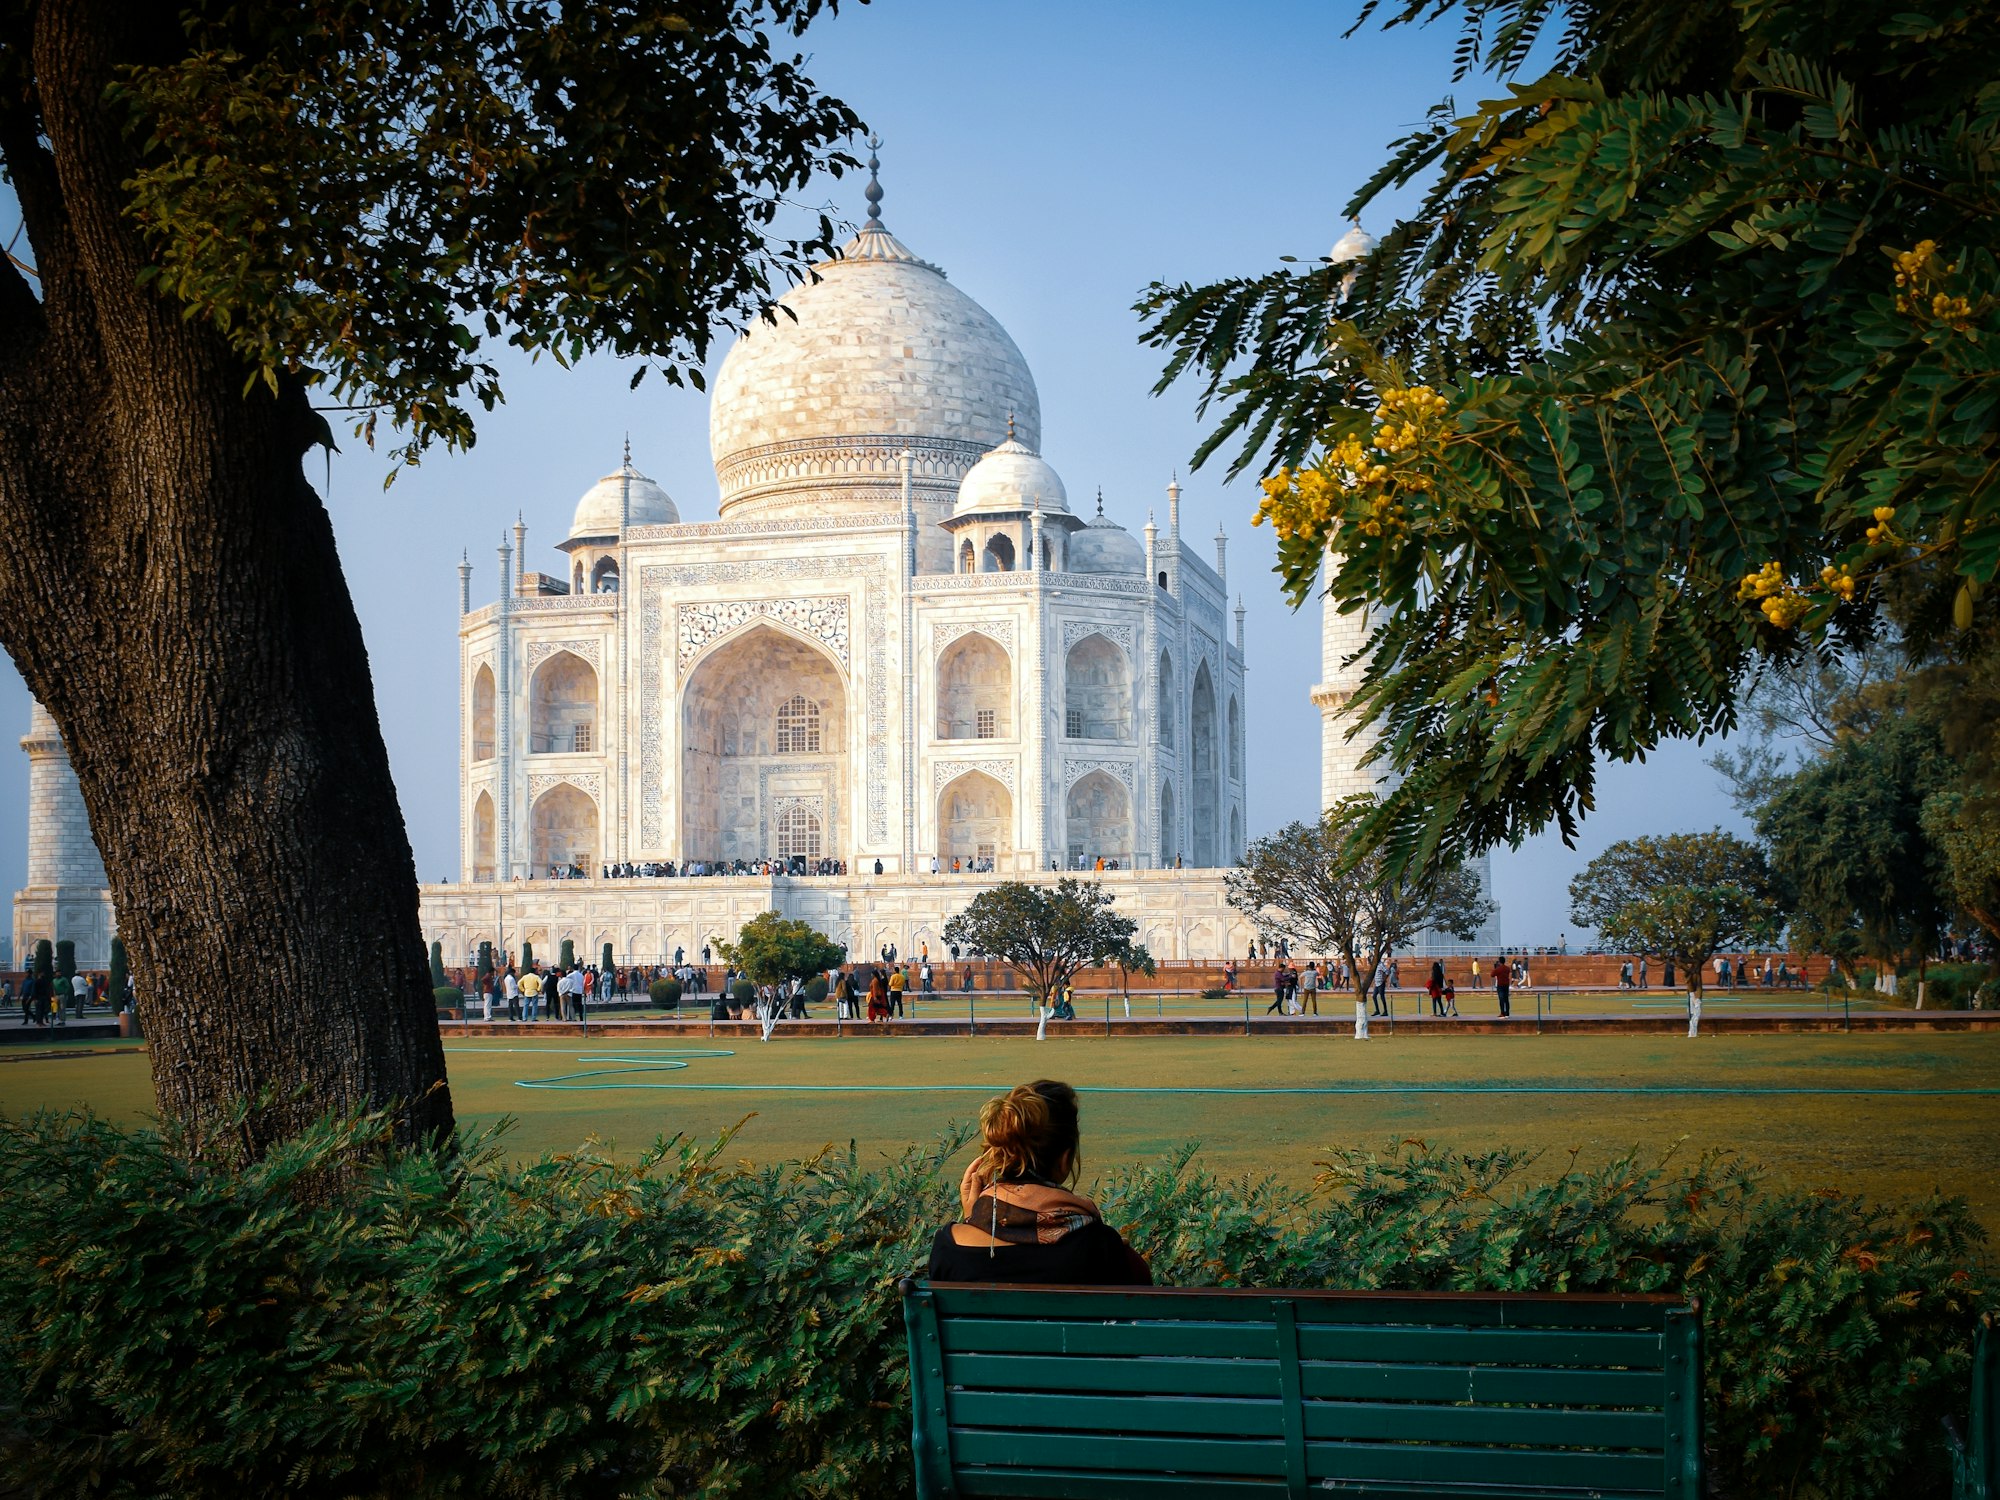 बधाई हो: पर्यटन के लिए डेढ़ साल बाद 'खुलने' जा रहा है दर्शनीय भारत